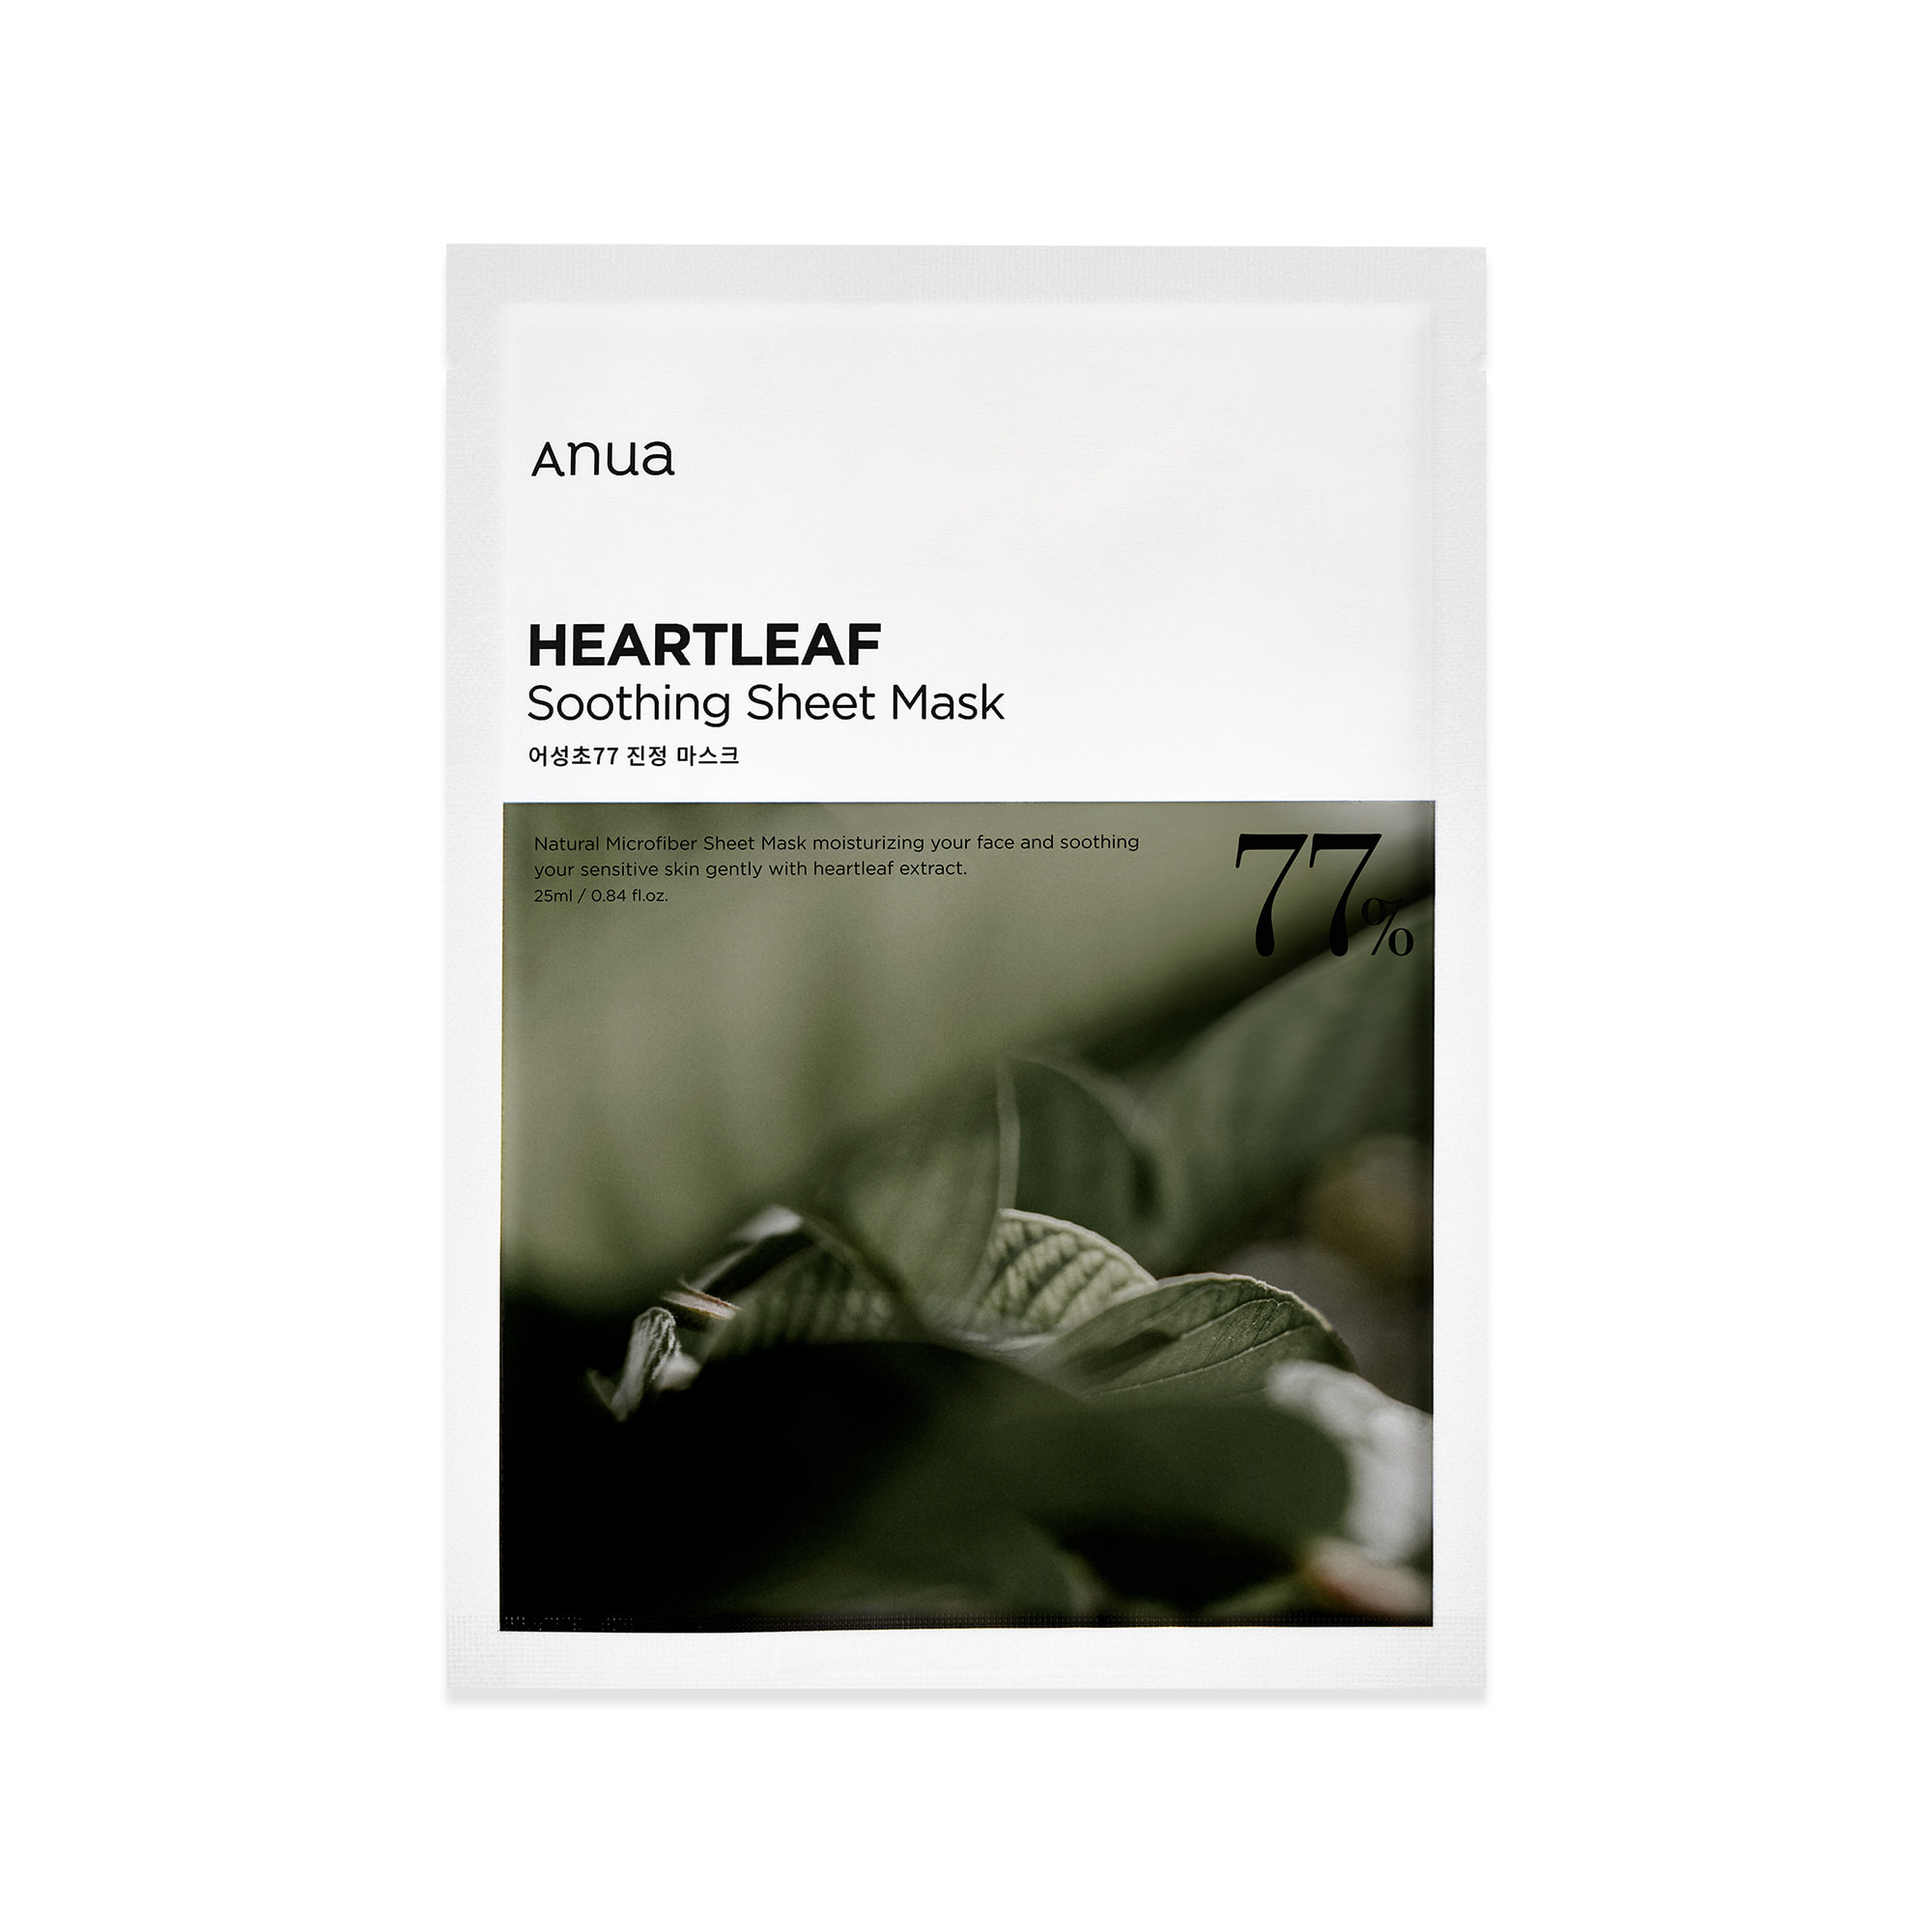 anua - Heartleaf 77 Soothing Sheet Mask 10ea set